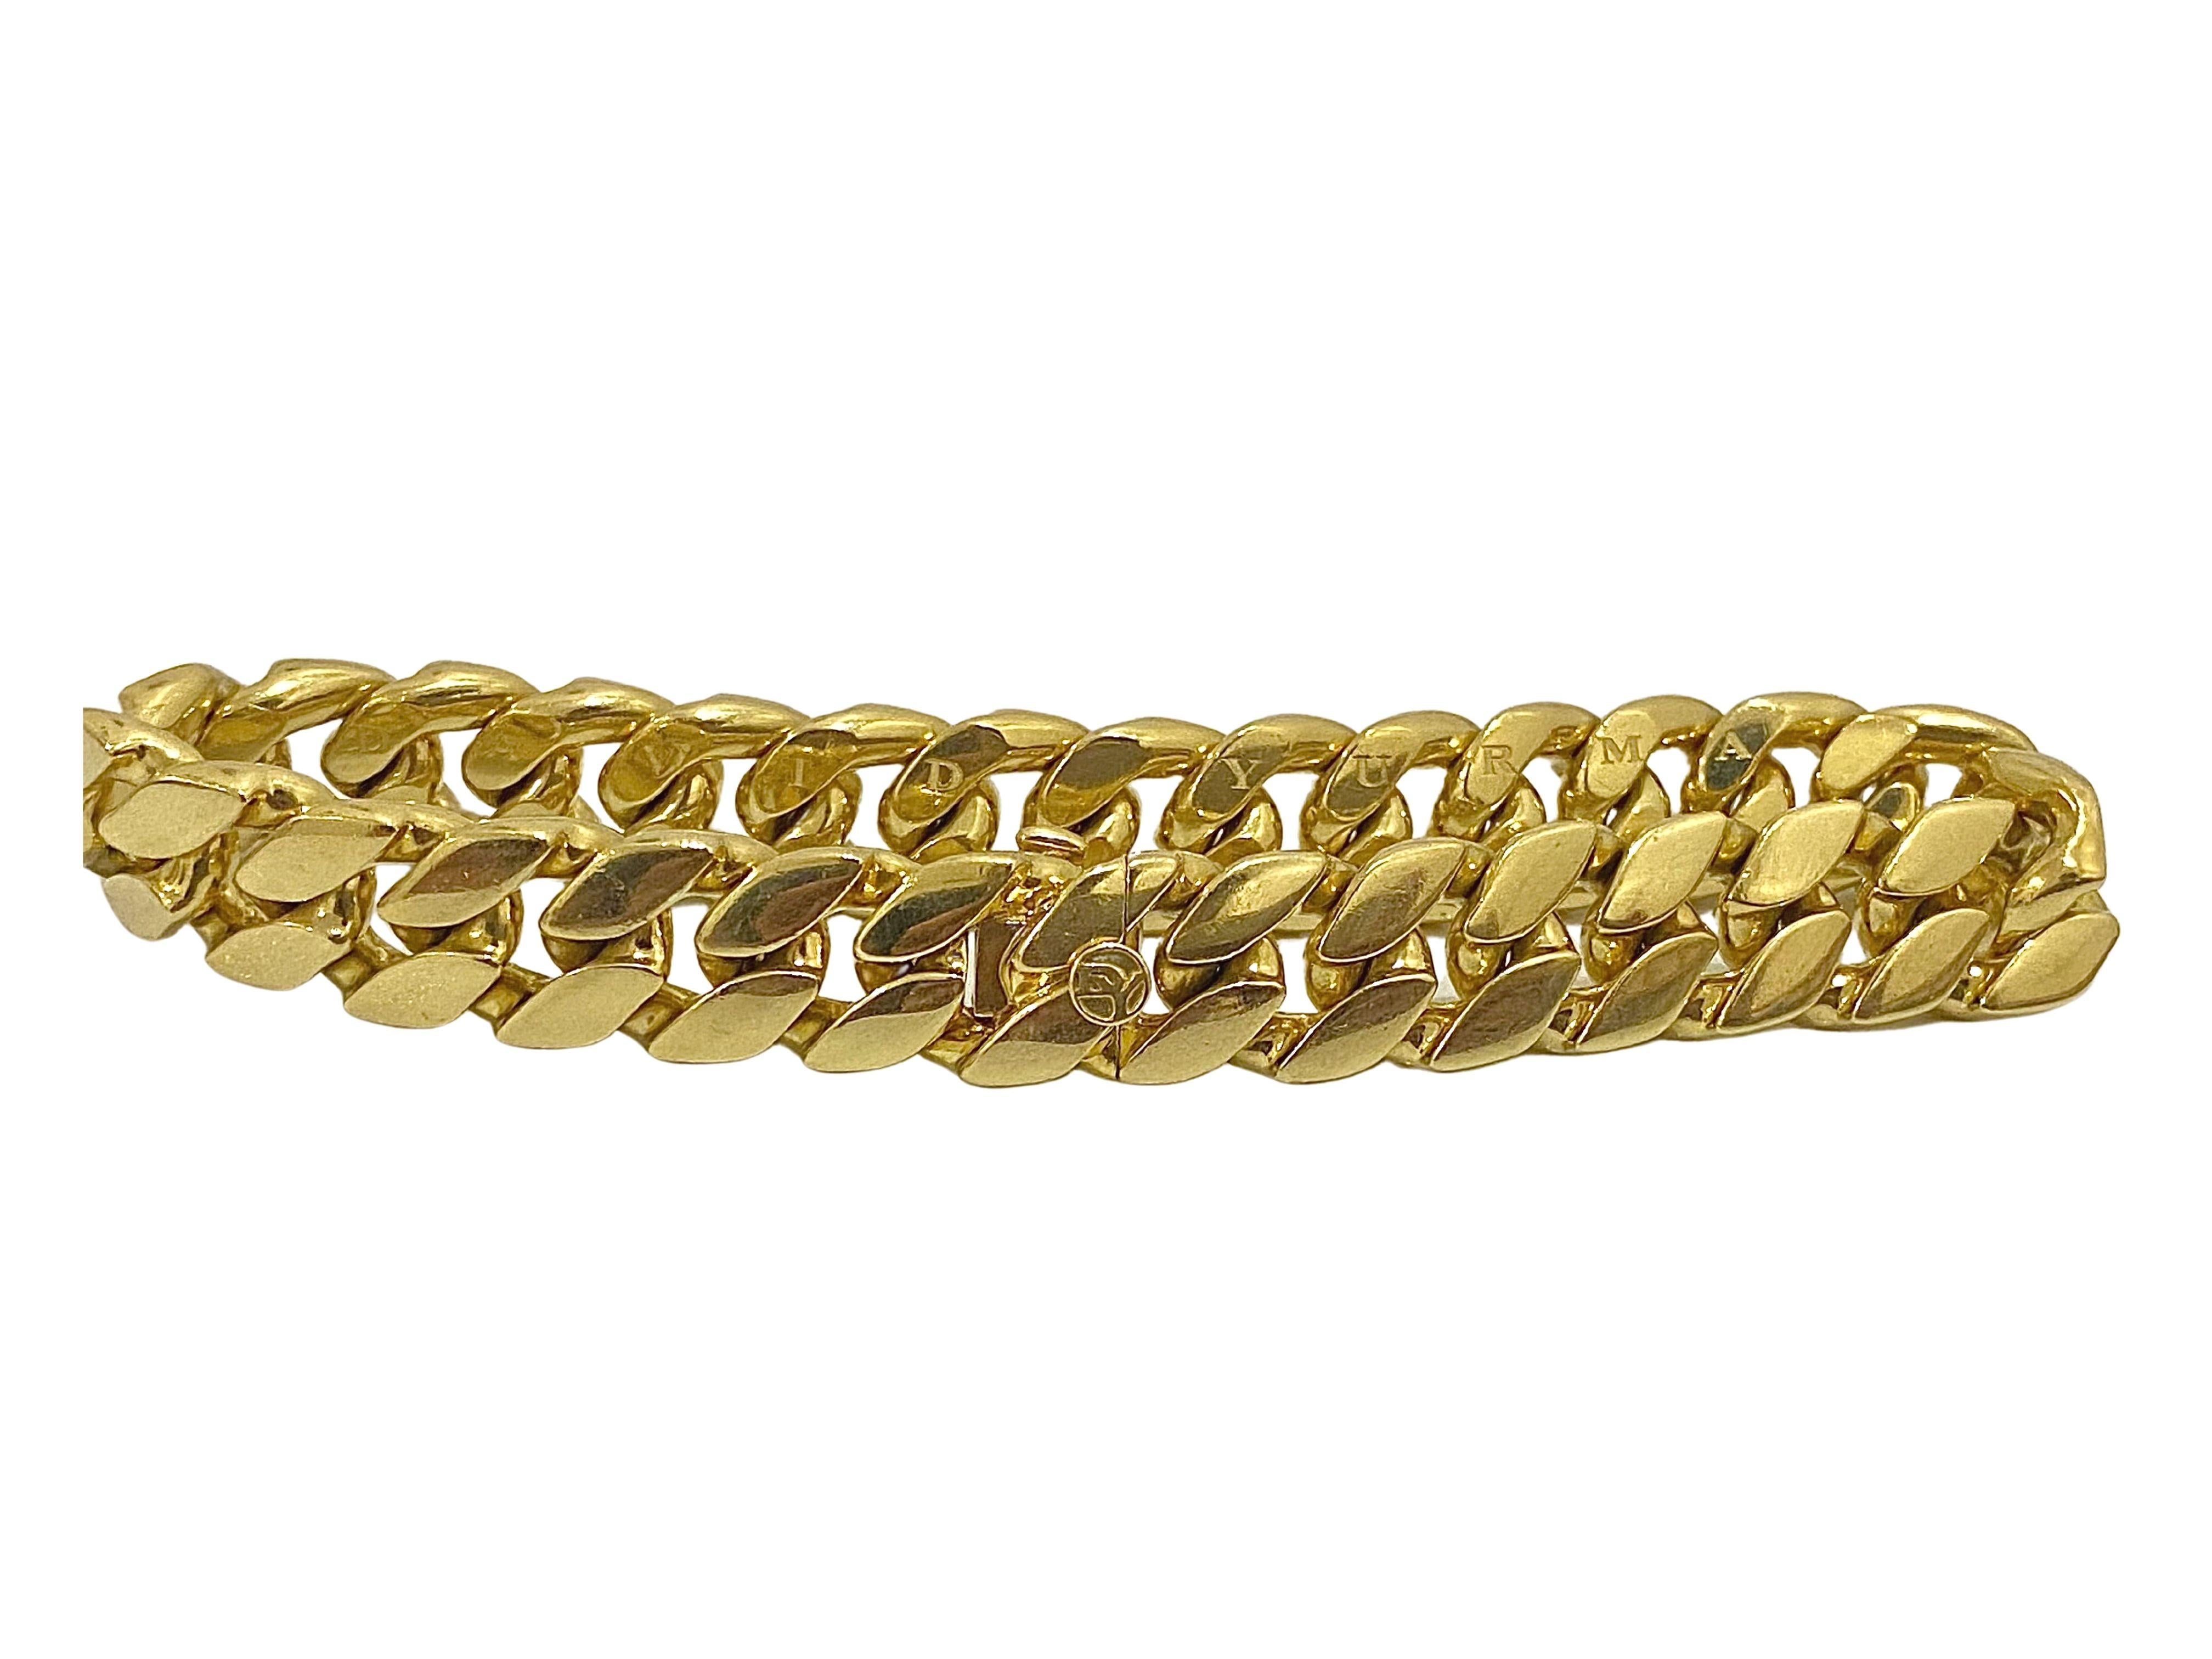 DAVID YURMAN Original flaches kubanisches Gliederarmband mit Kastenverschluss. Das in Italien hergestellte Armband aus massivem 18-karätigem Gold trägt die Signatur DAVID YURMAN auf den Gliedern und 